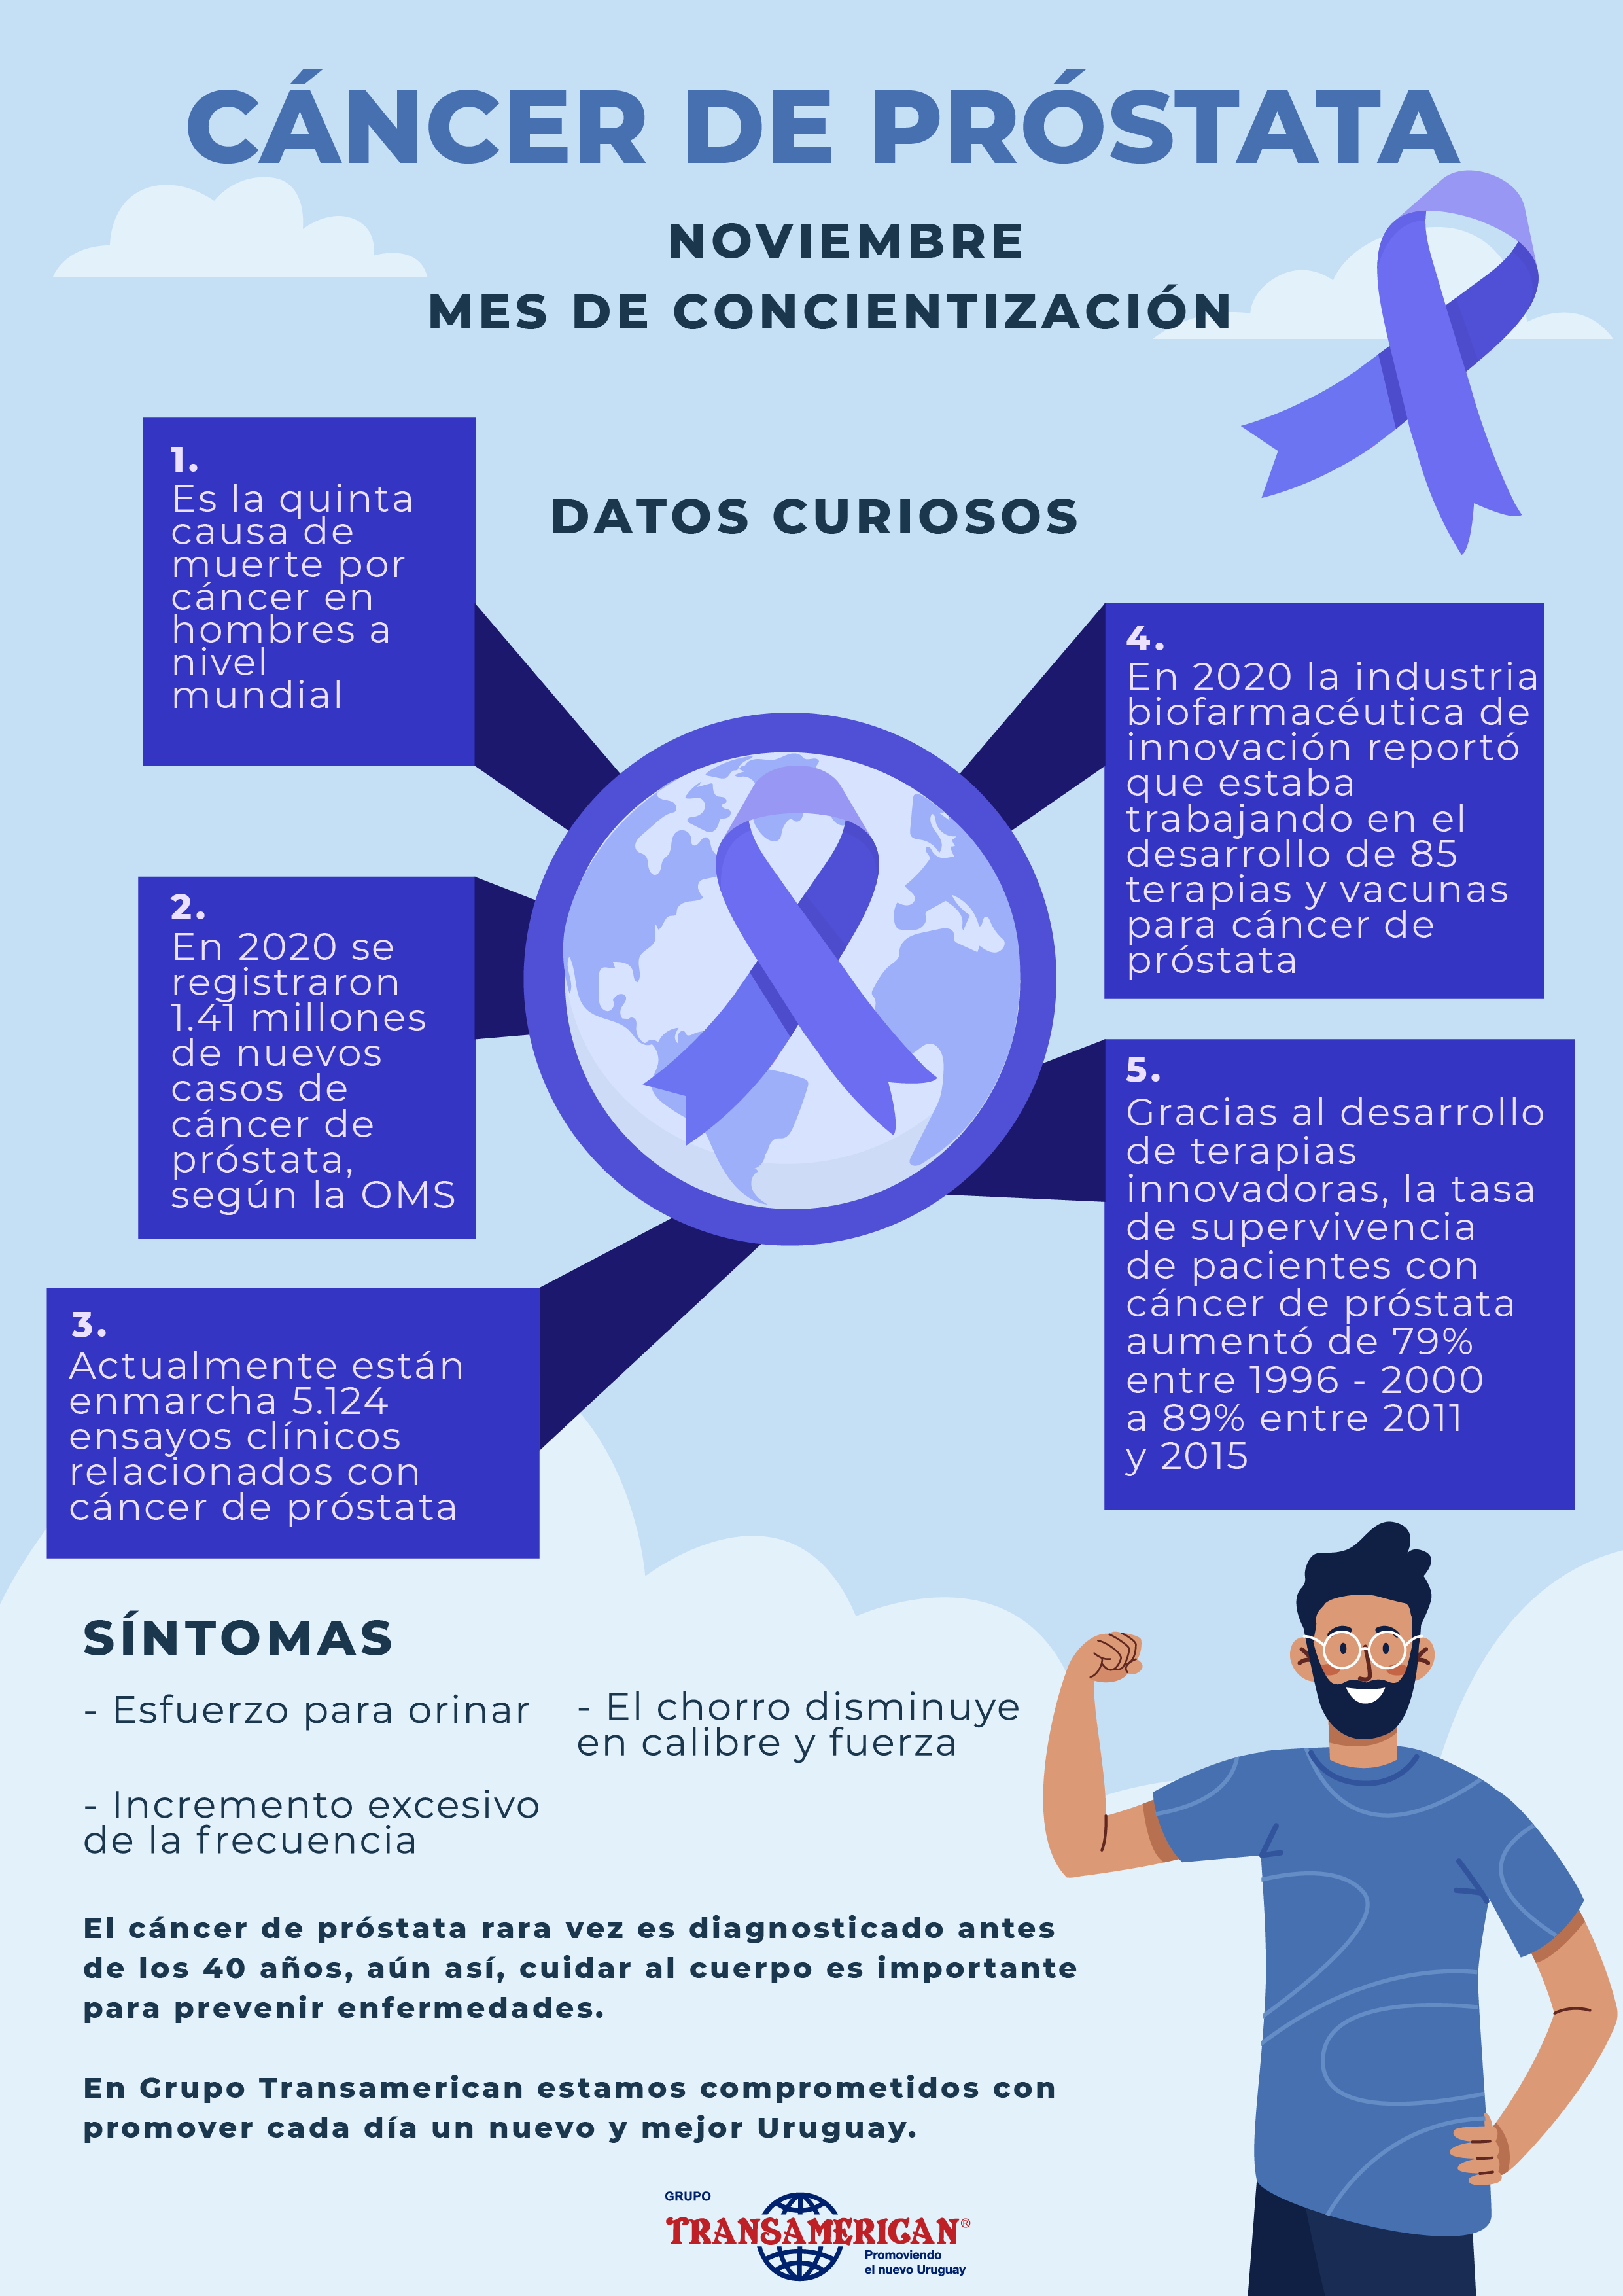 Día mundial de lucha contra el cáncer de próstata: mes de concientización en Grupo Transamerican